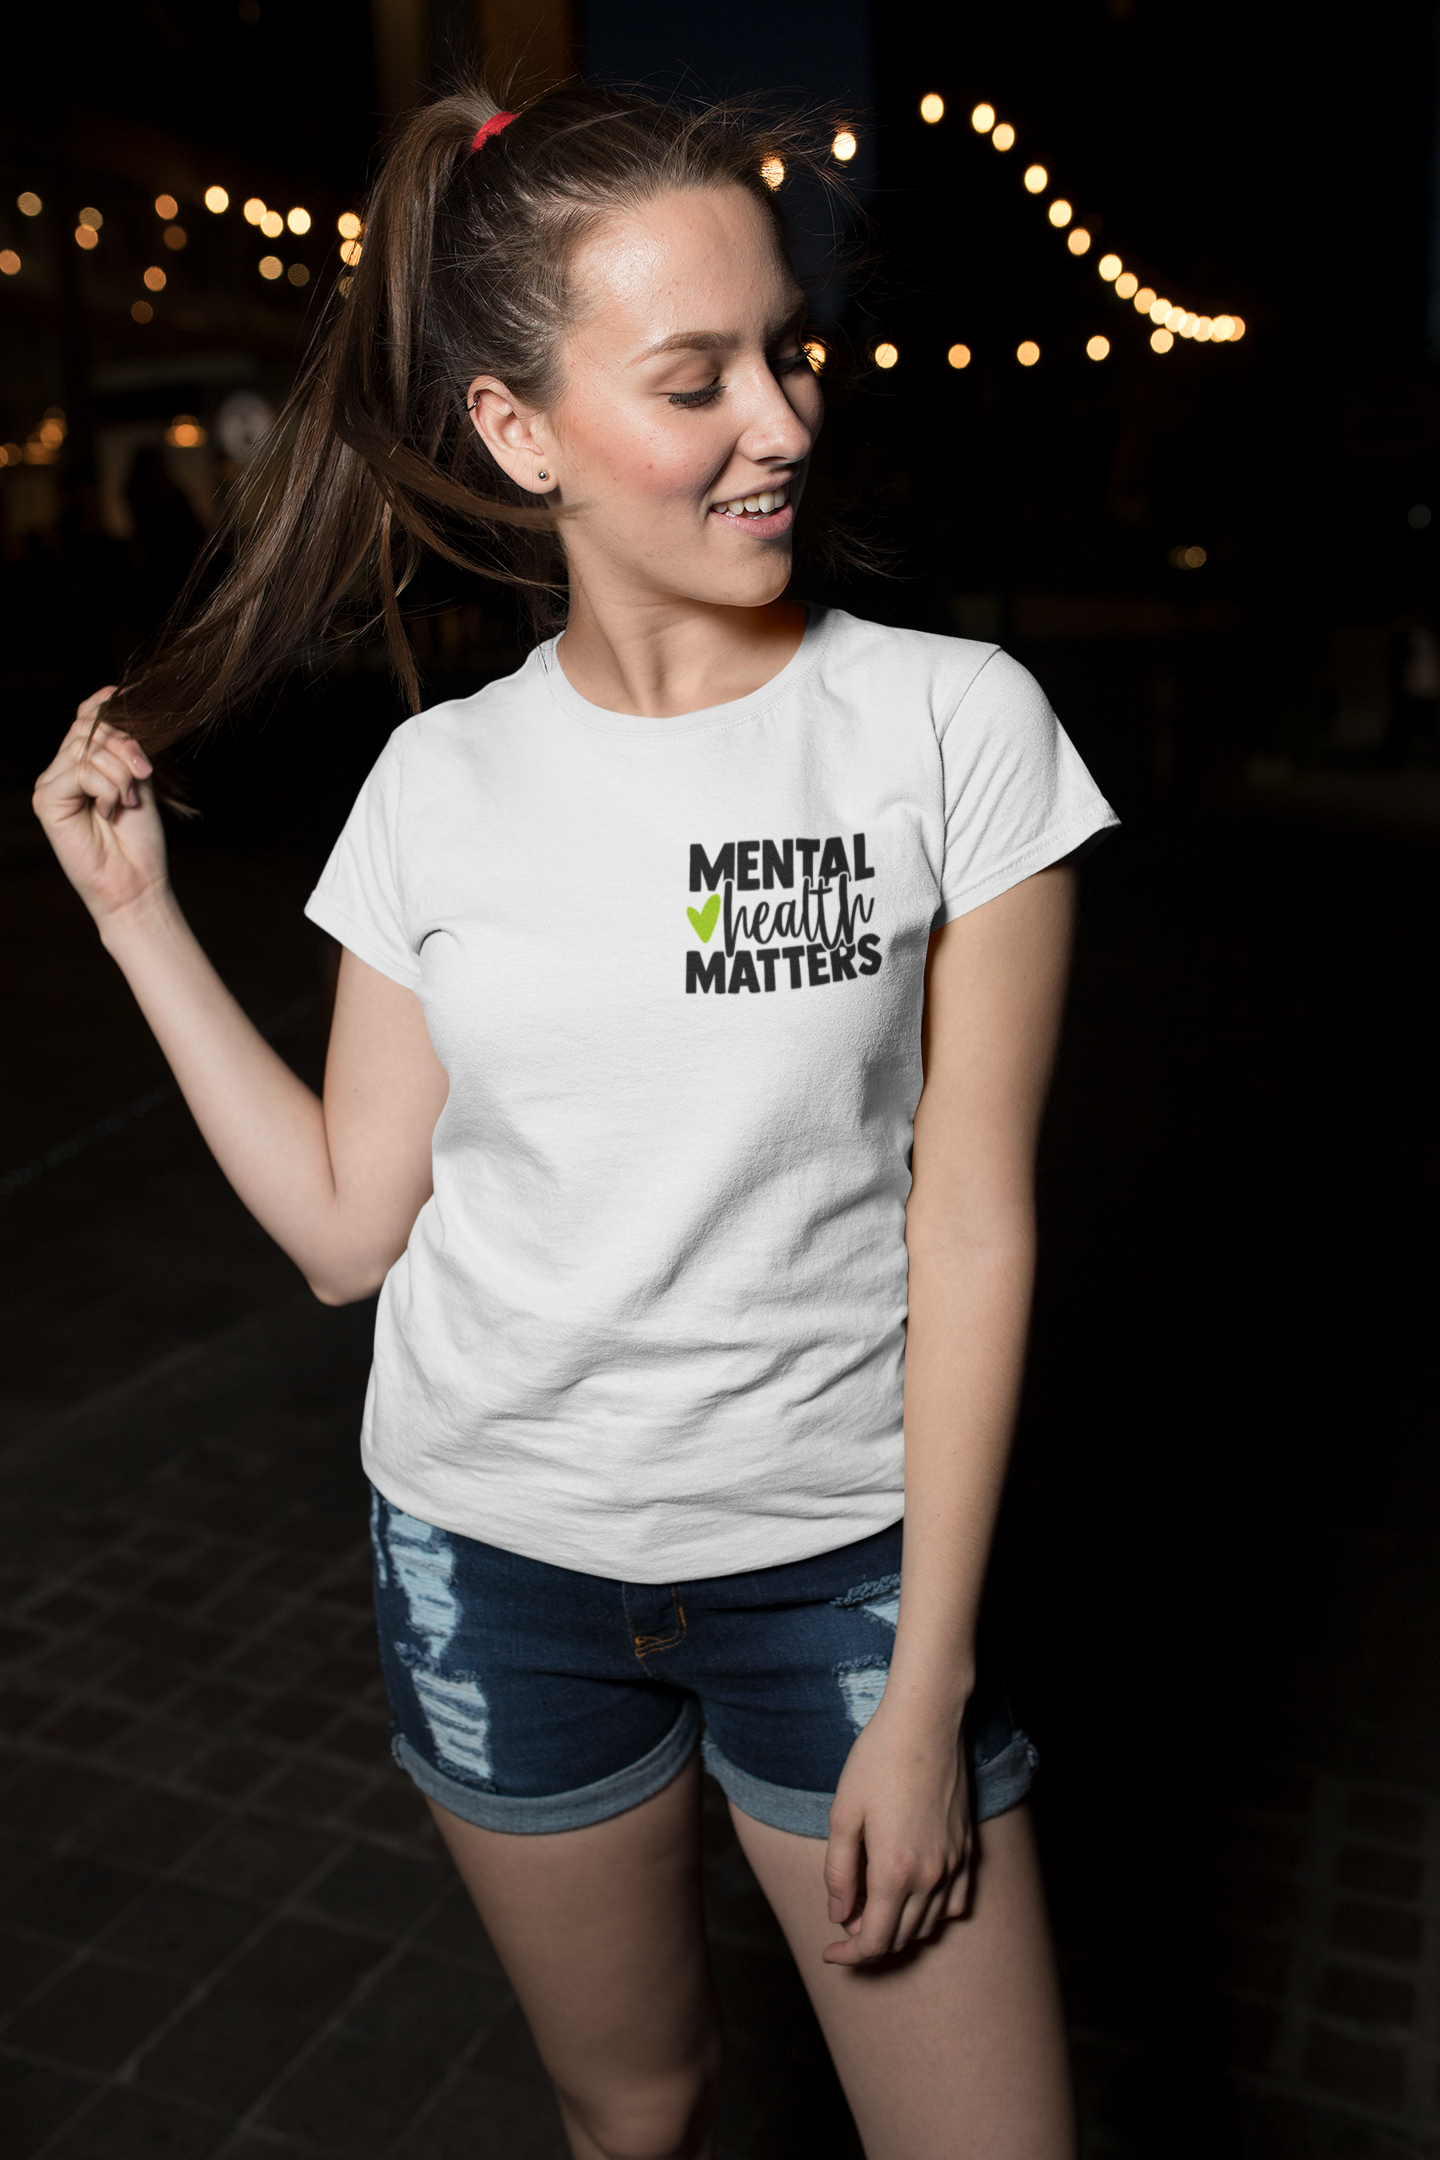 Mental Health Matters - Heart : Women's 100% Cotton T-Shirt